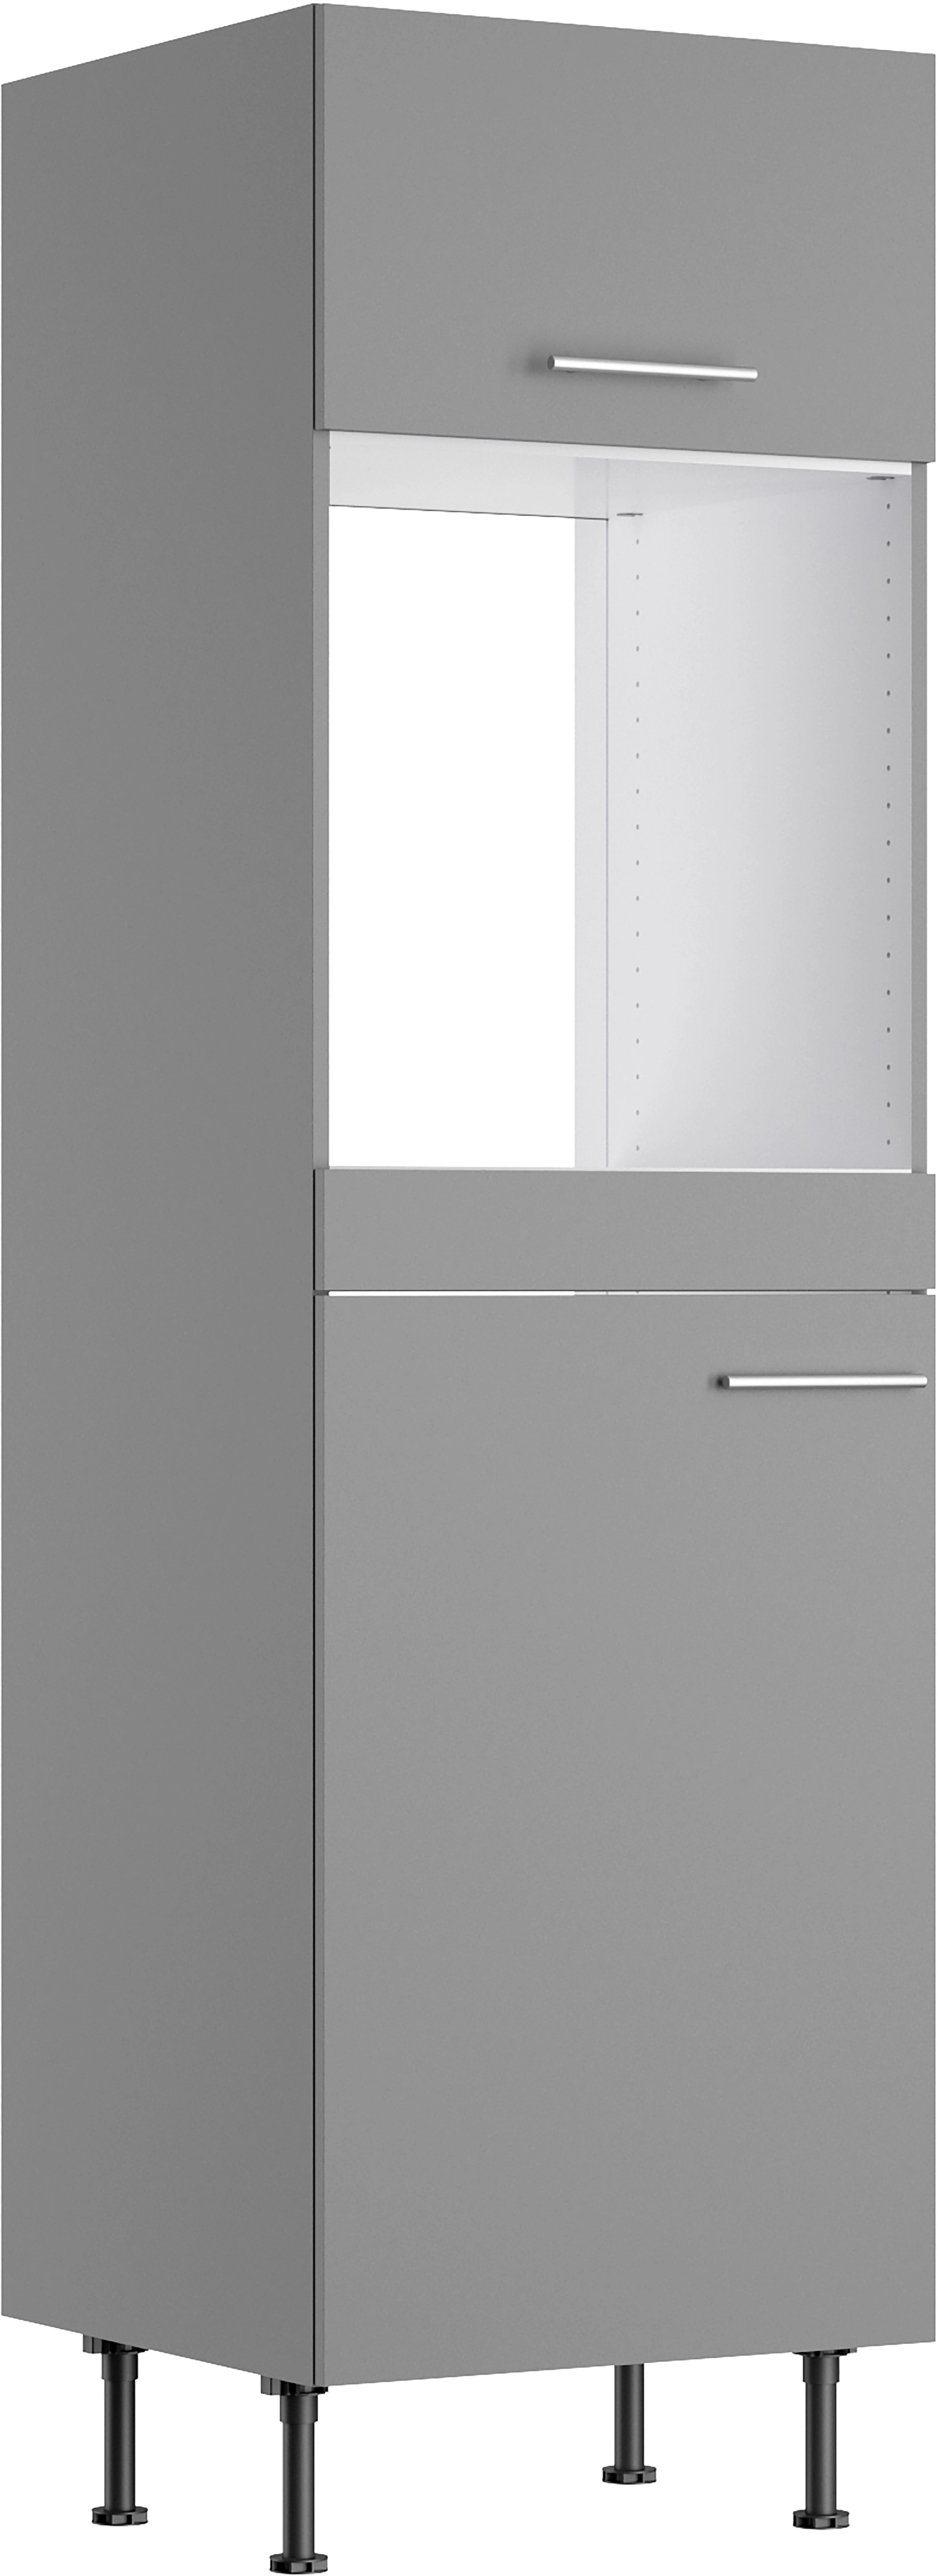 Optifit und Basaltgrau Hochschrank Kühlschrank OBI 60 Mats825 für kaufen bei Backofen cm